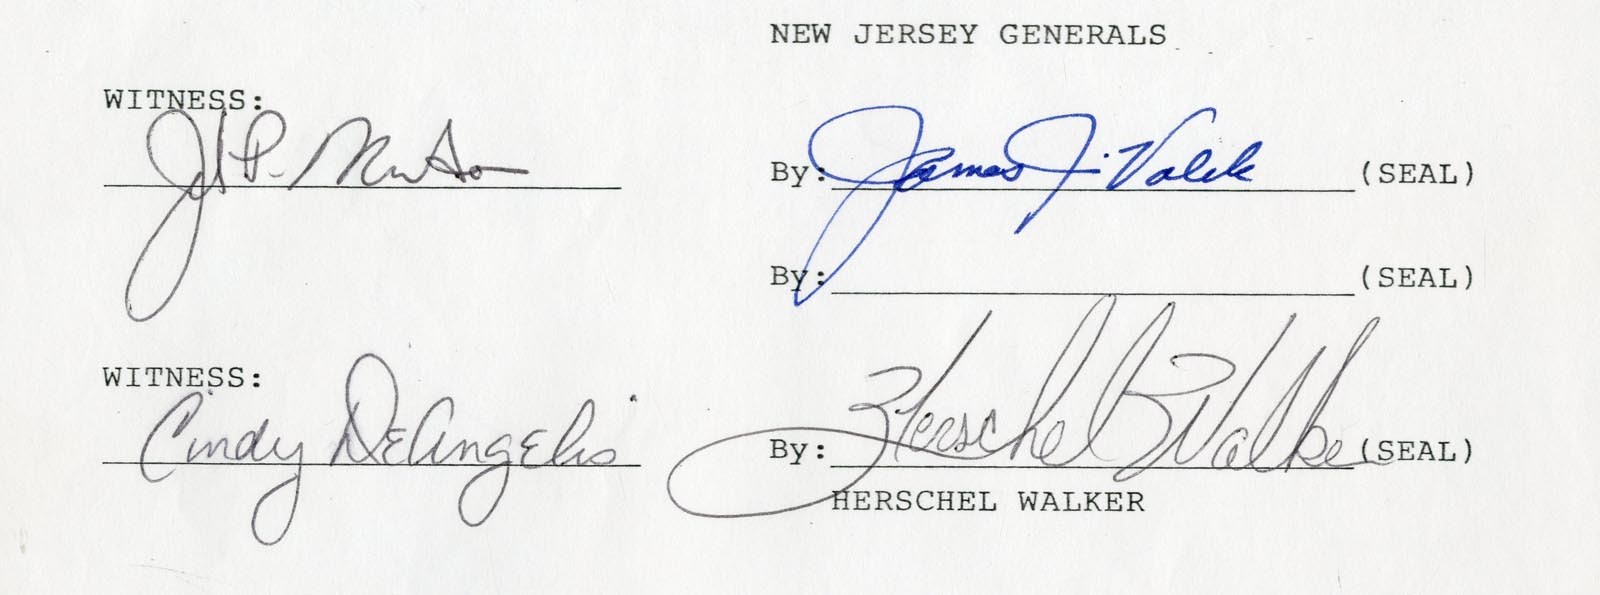 1983 Herschel Walker New Jersey Generals Signed Contract